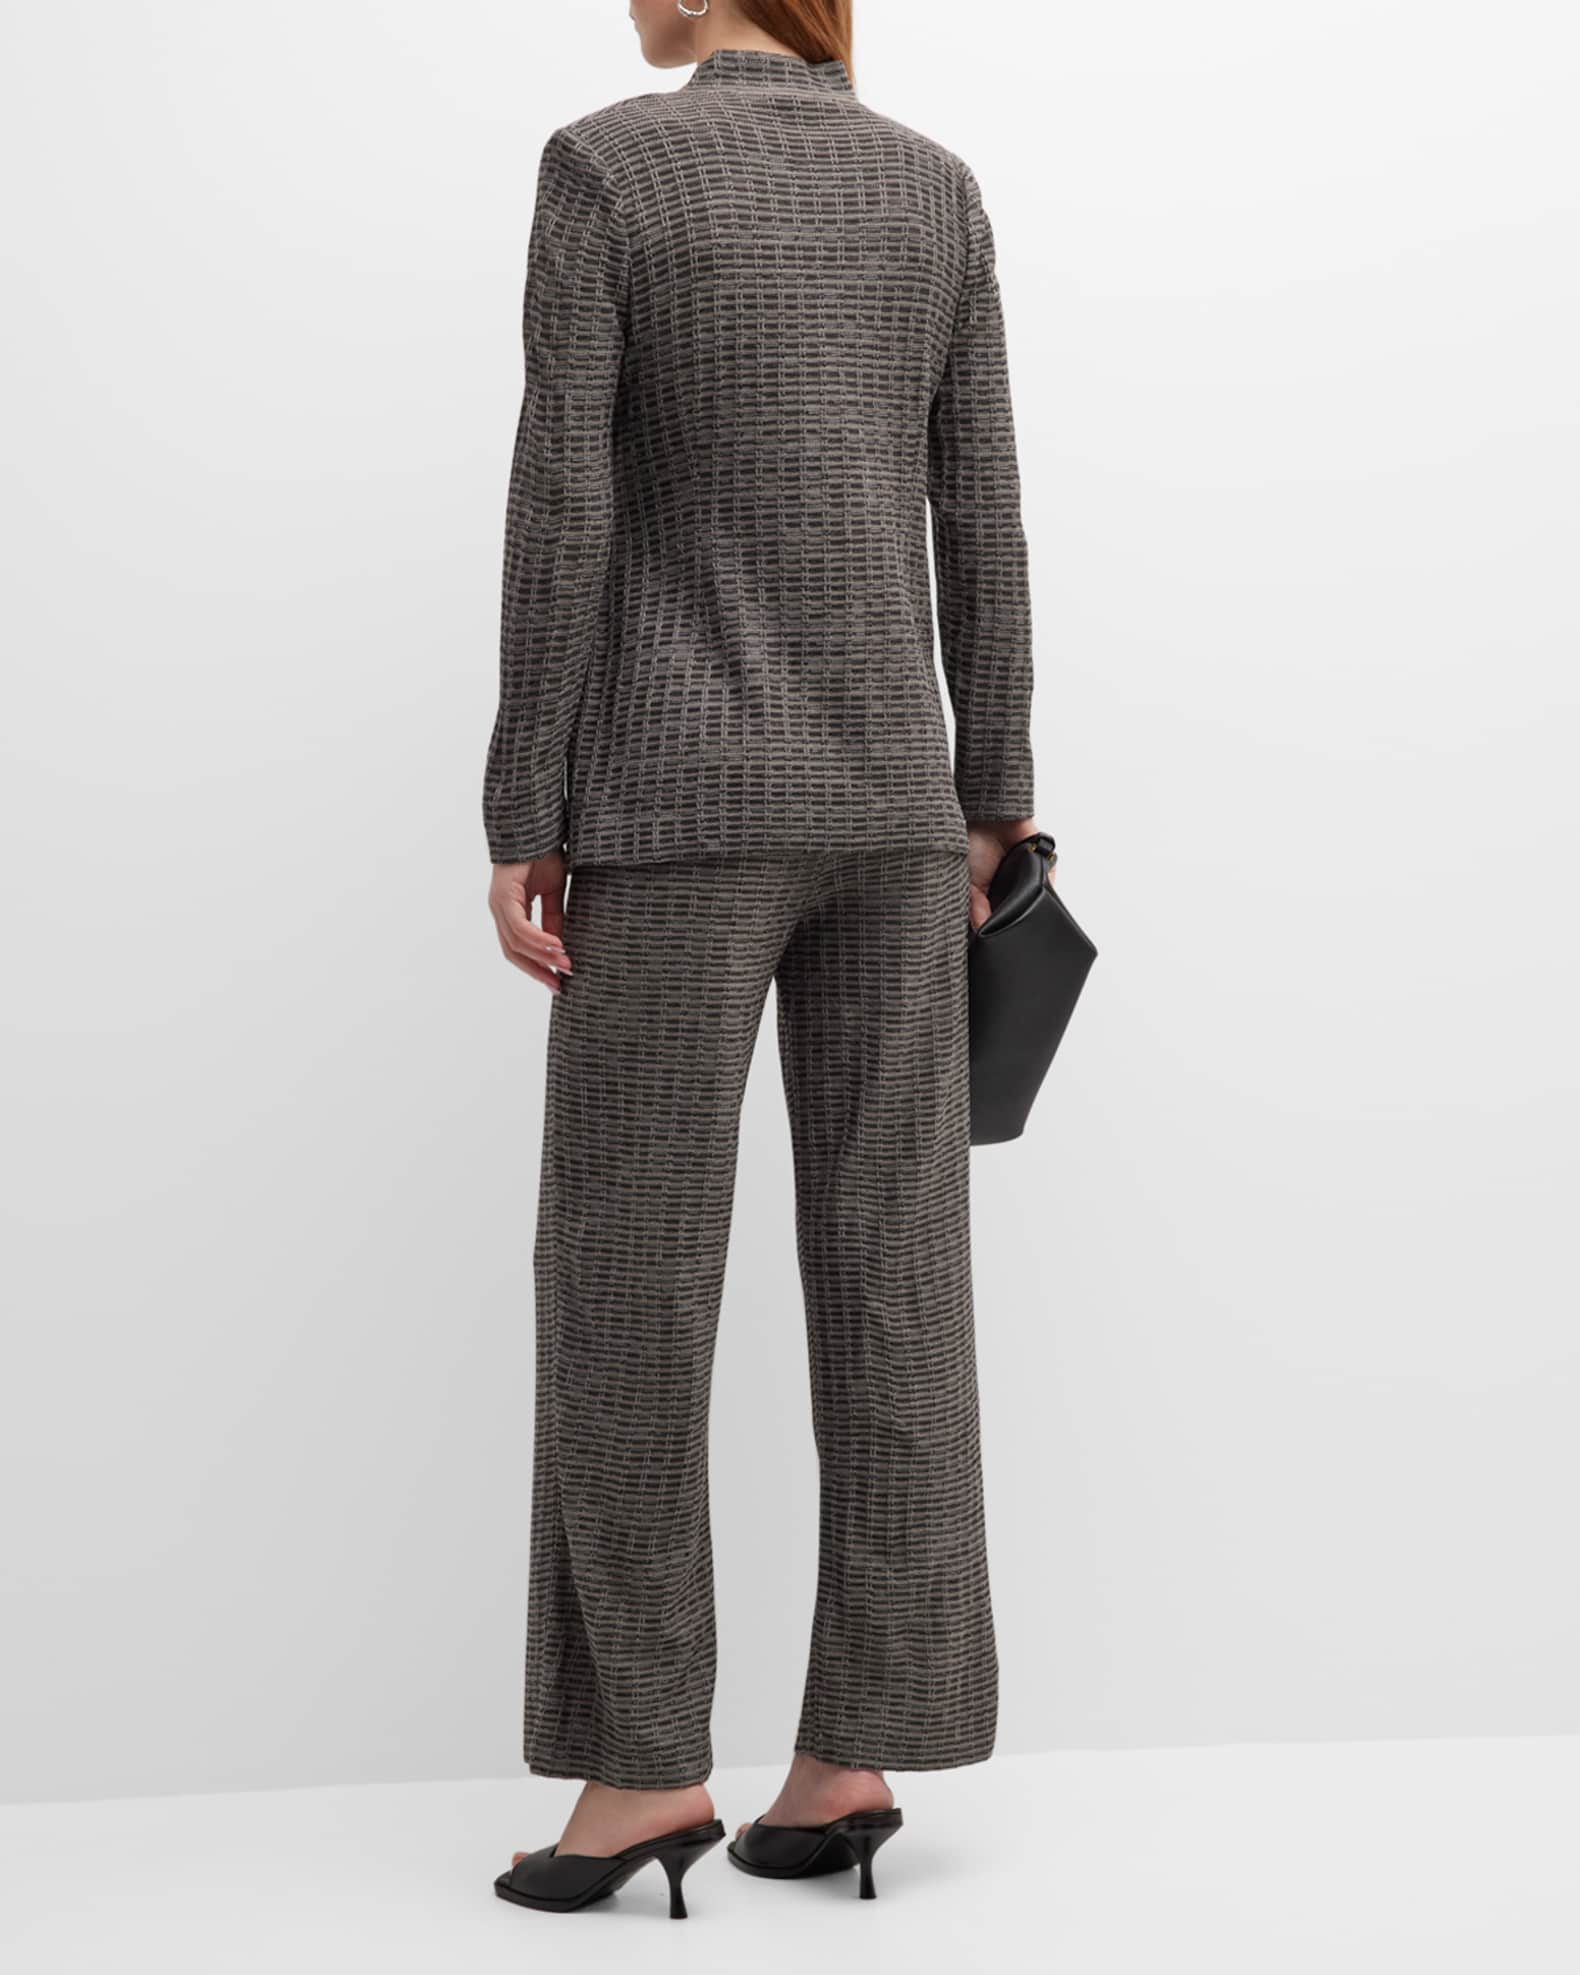 Misook Tweed Wrap Side-Tie Blazer | Neiman Marcus